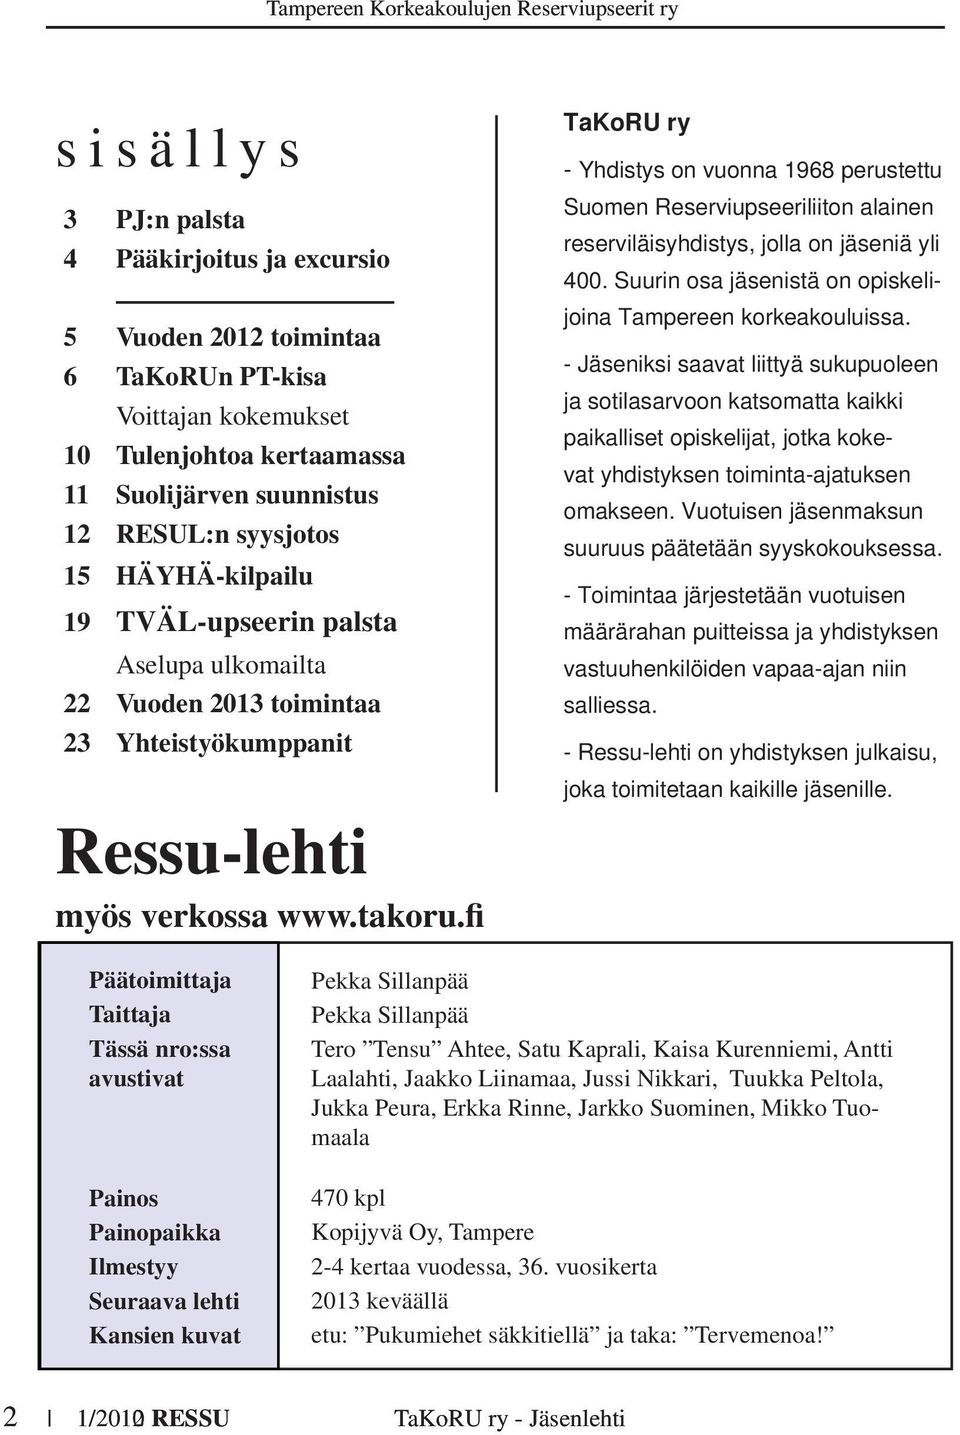 fi TaKoRU ry - Yhdistys on vuonna 1968 perustettu Suomen Reserviupseeriliiton alainen reserviläisyhdistys, jolla on jäseniä yli 400. Suurin osa jäsenistä on opiskelijoina Tampereen korkeakouluissa.